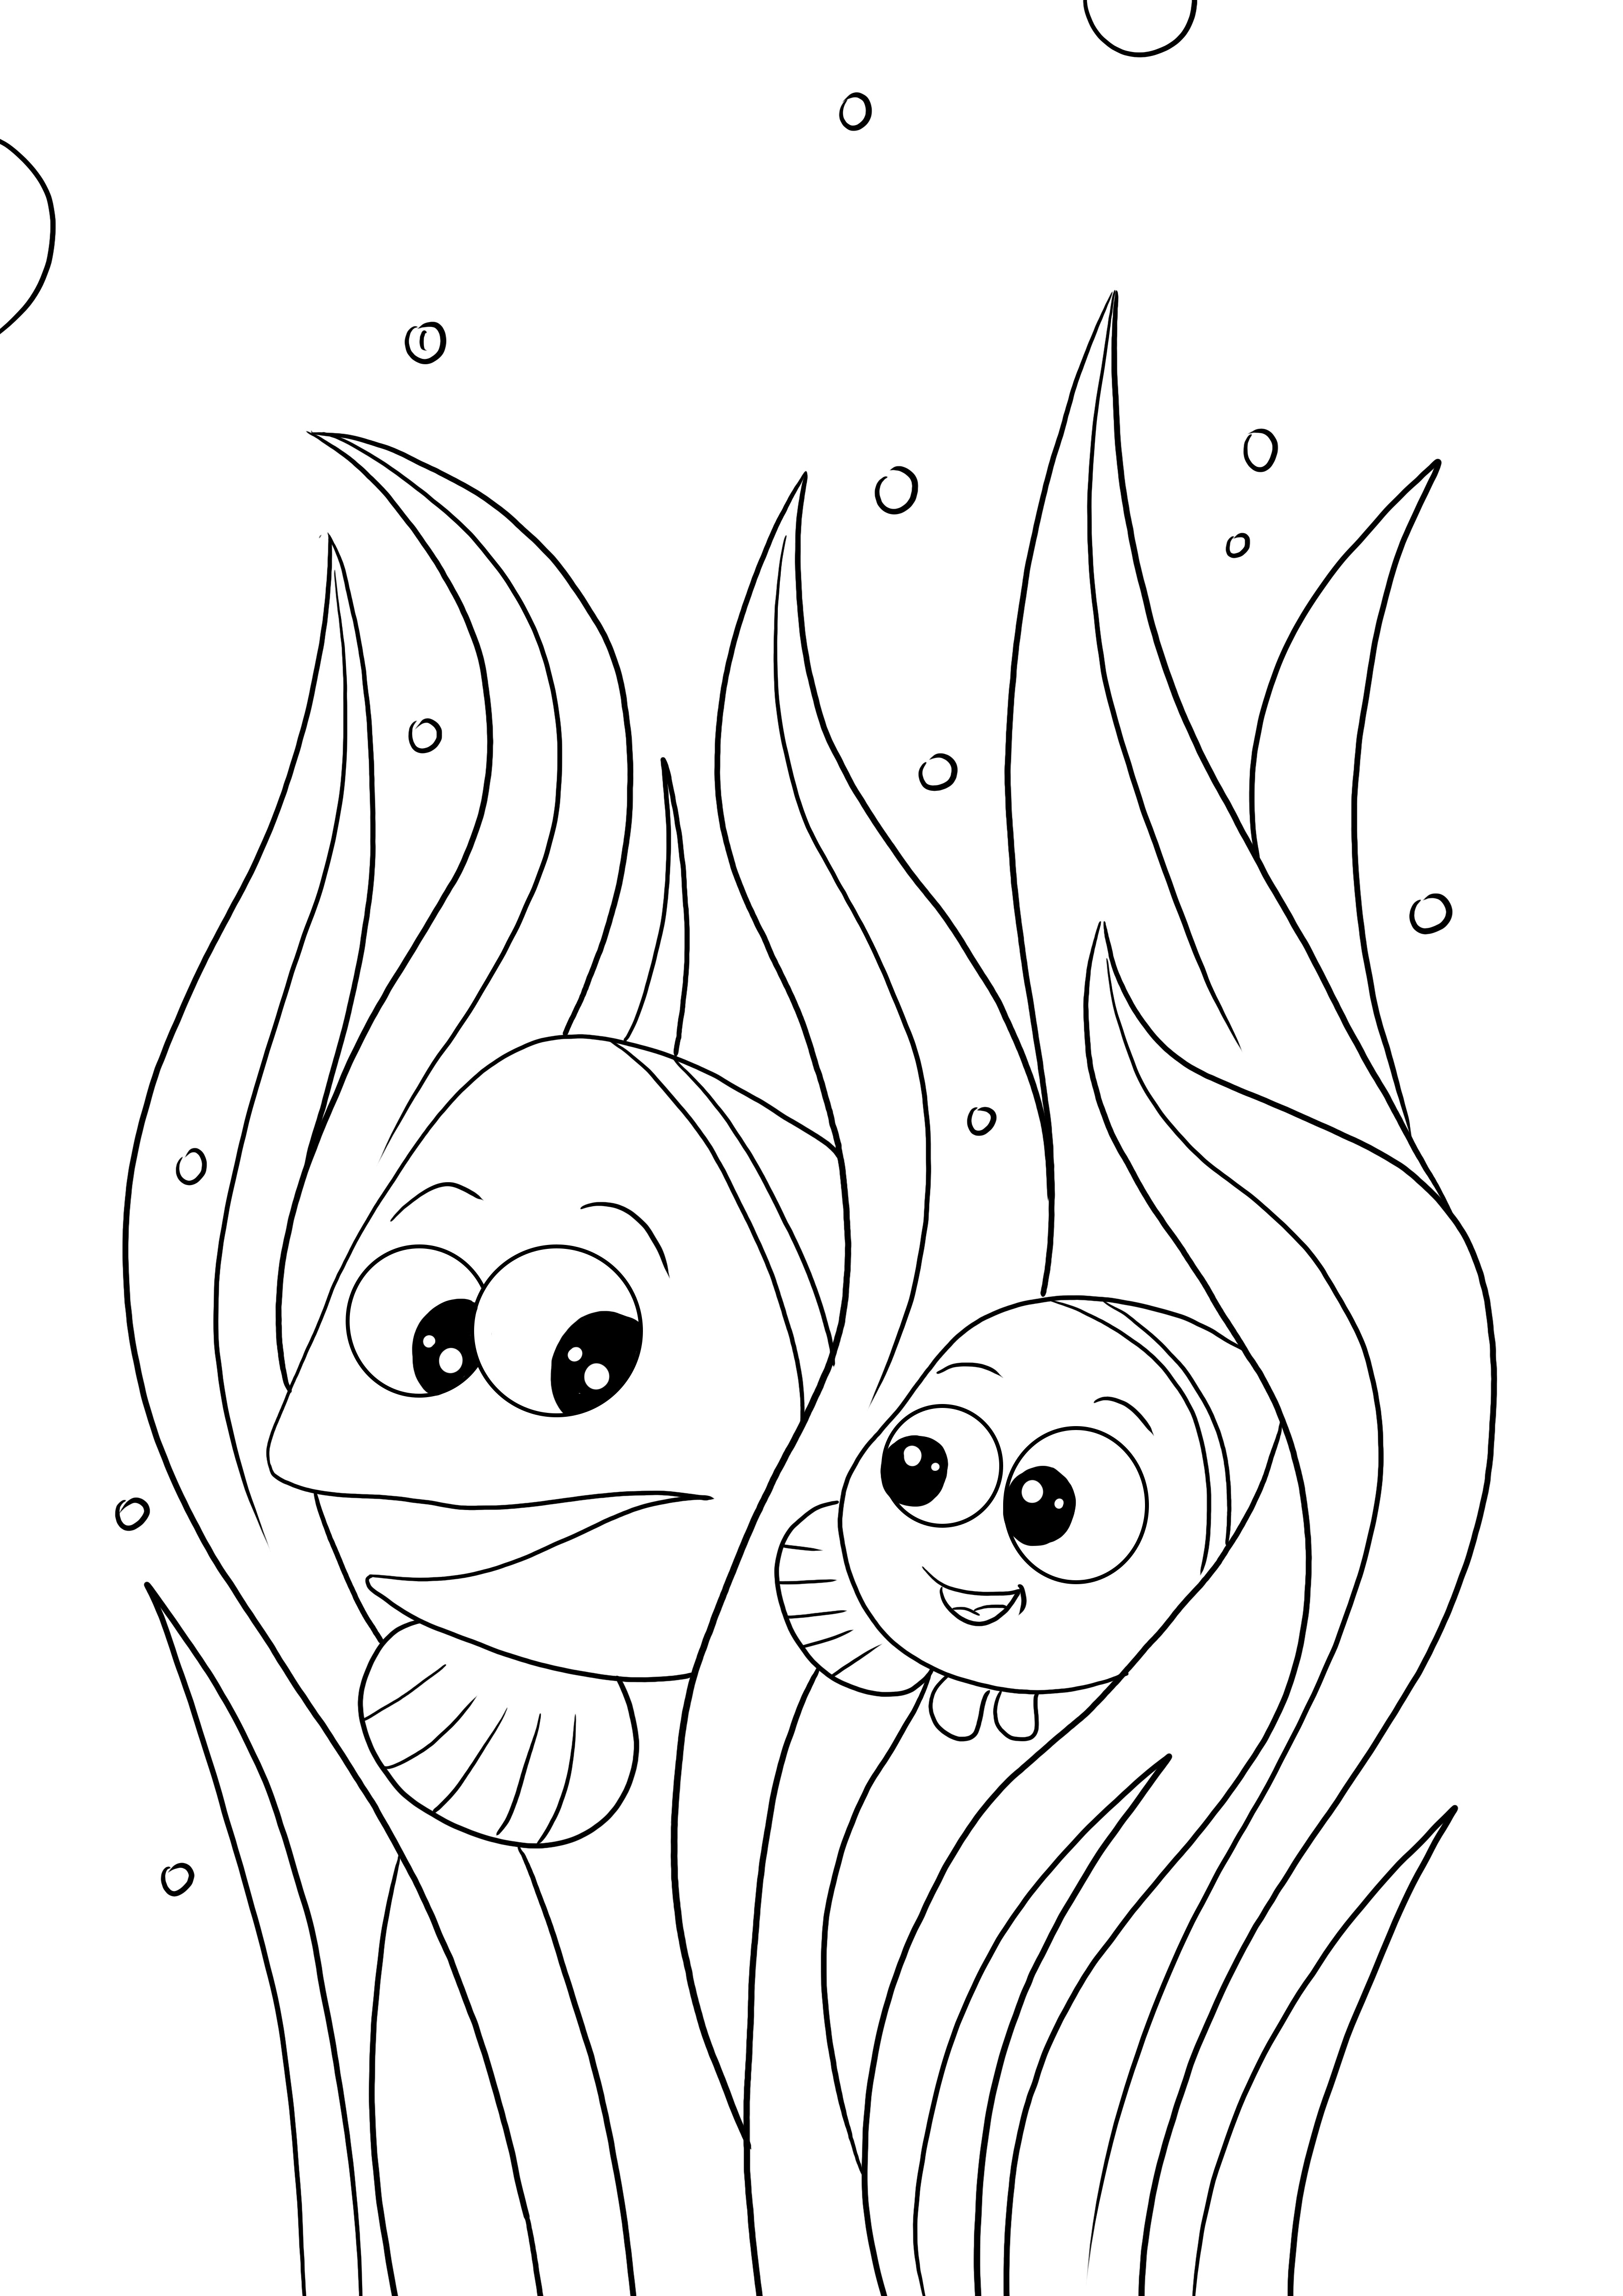 Halaman mewarnai dan mencetak gratis Marlin dan Nemo untuk anak-anak dari segala usia